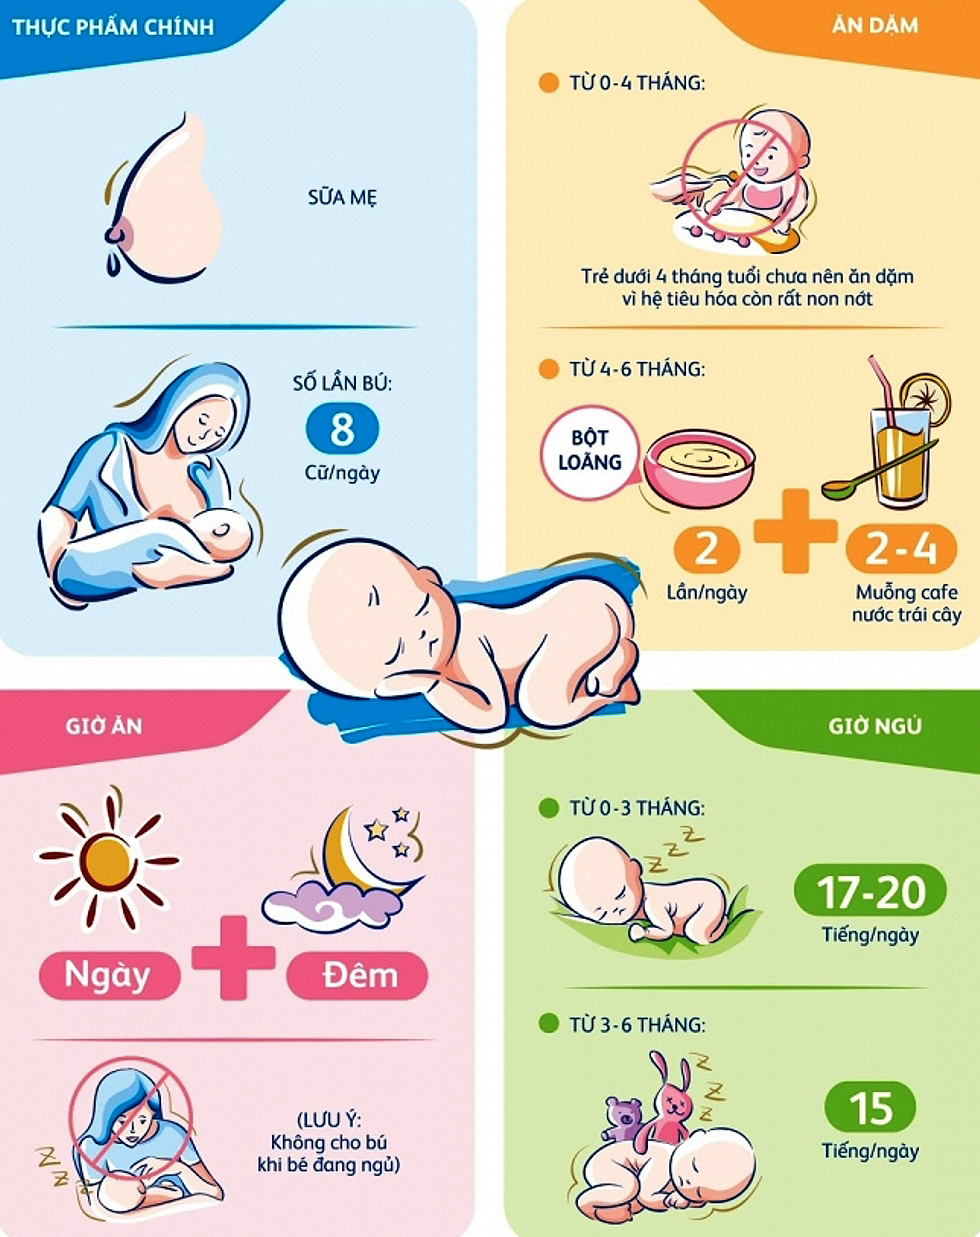 [Infographic] Bí kíp nuôi trẻ từ 0 đến 6 tháng tuổi